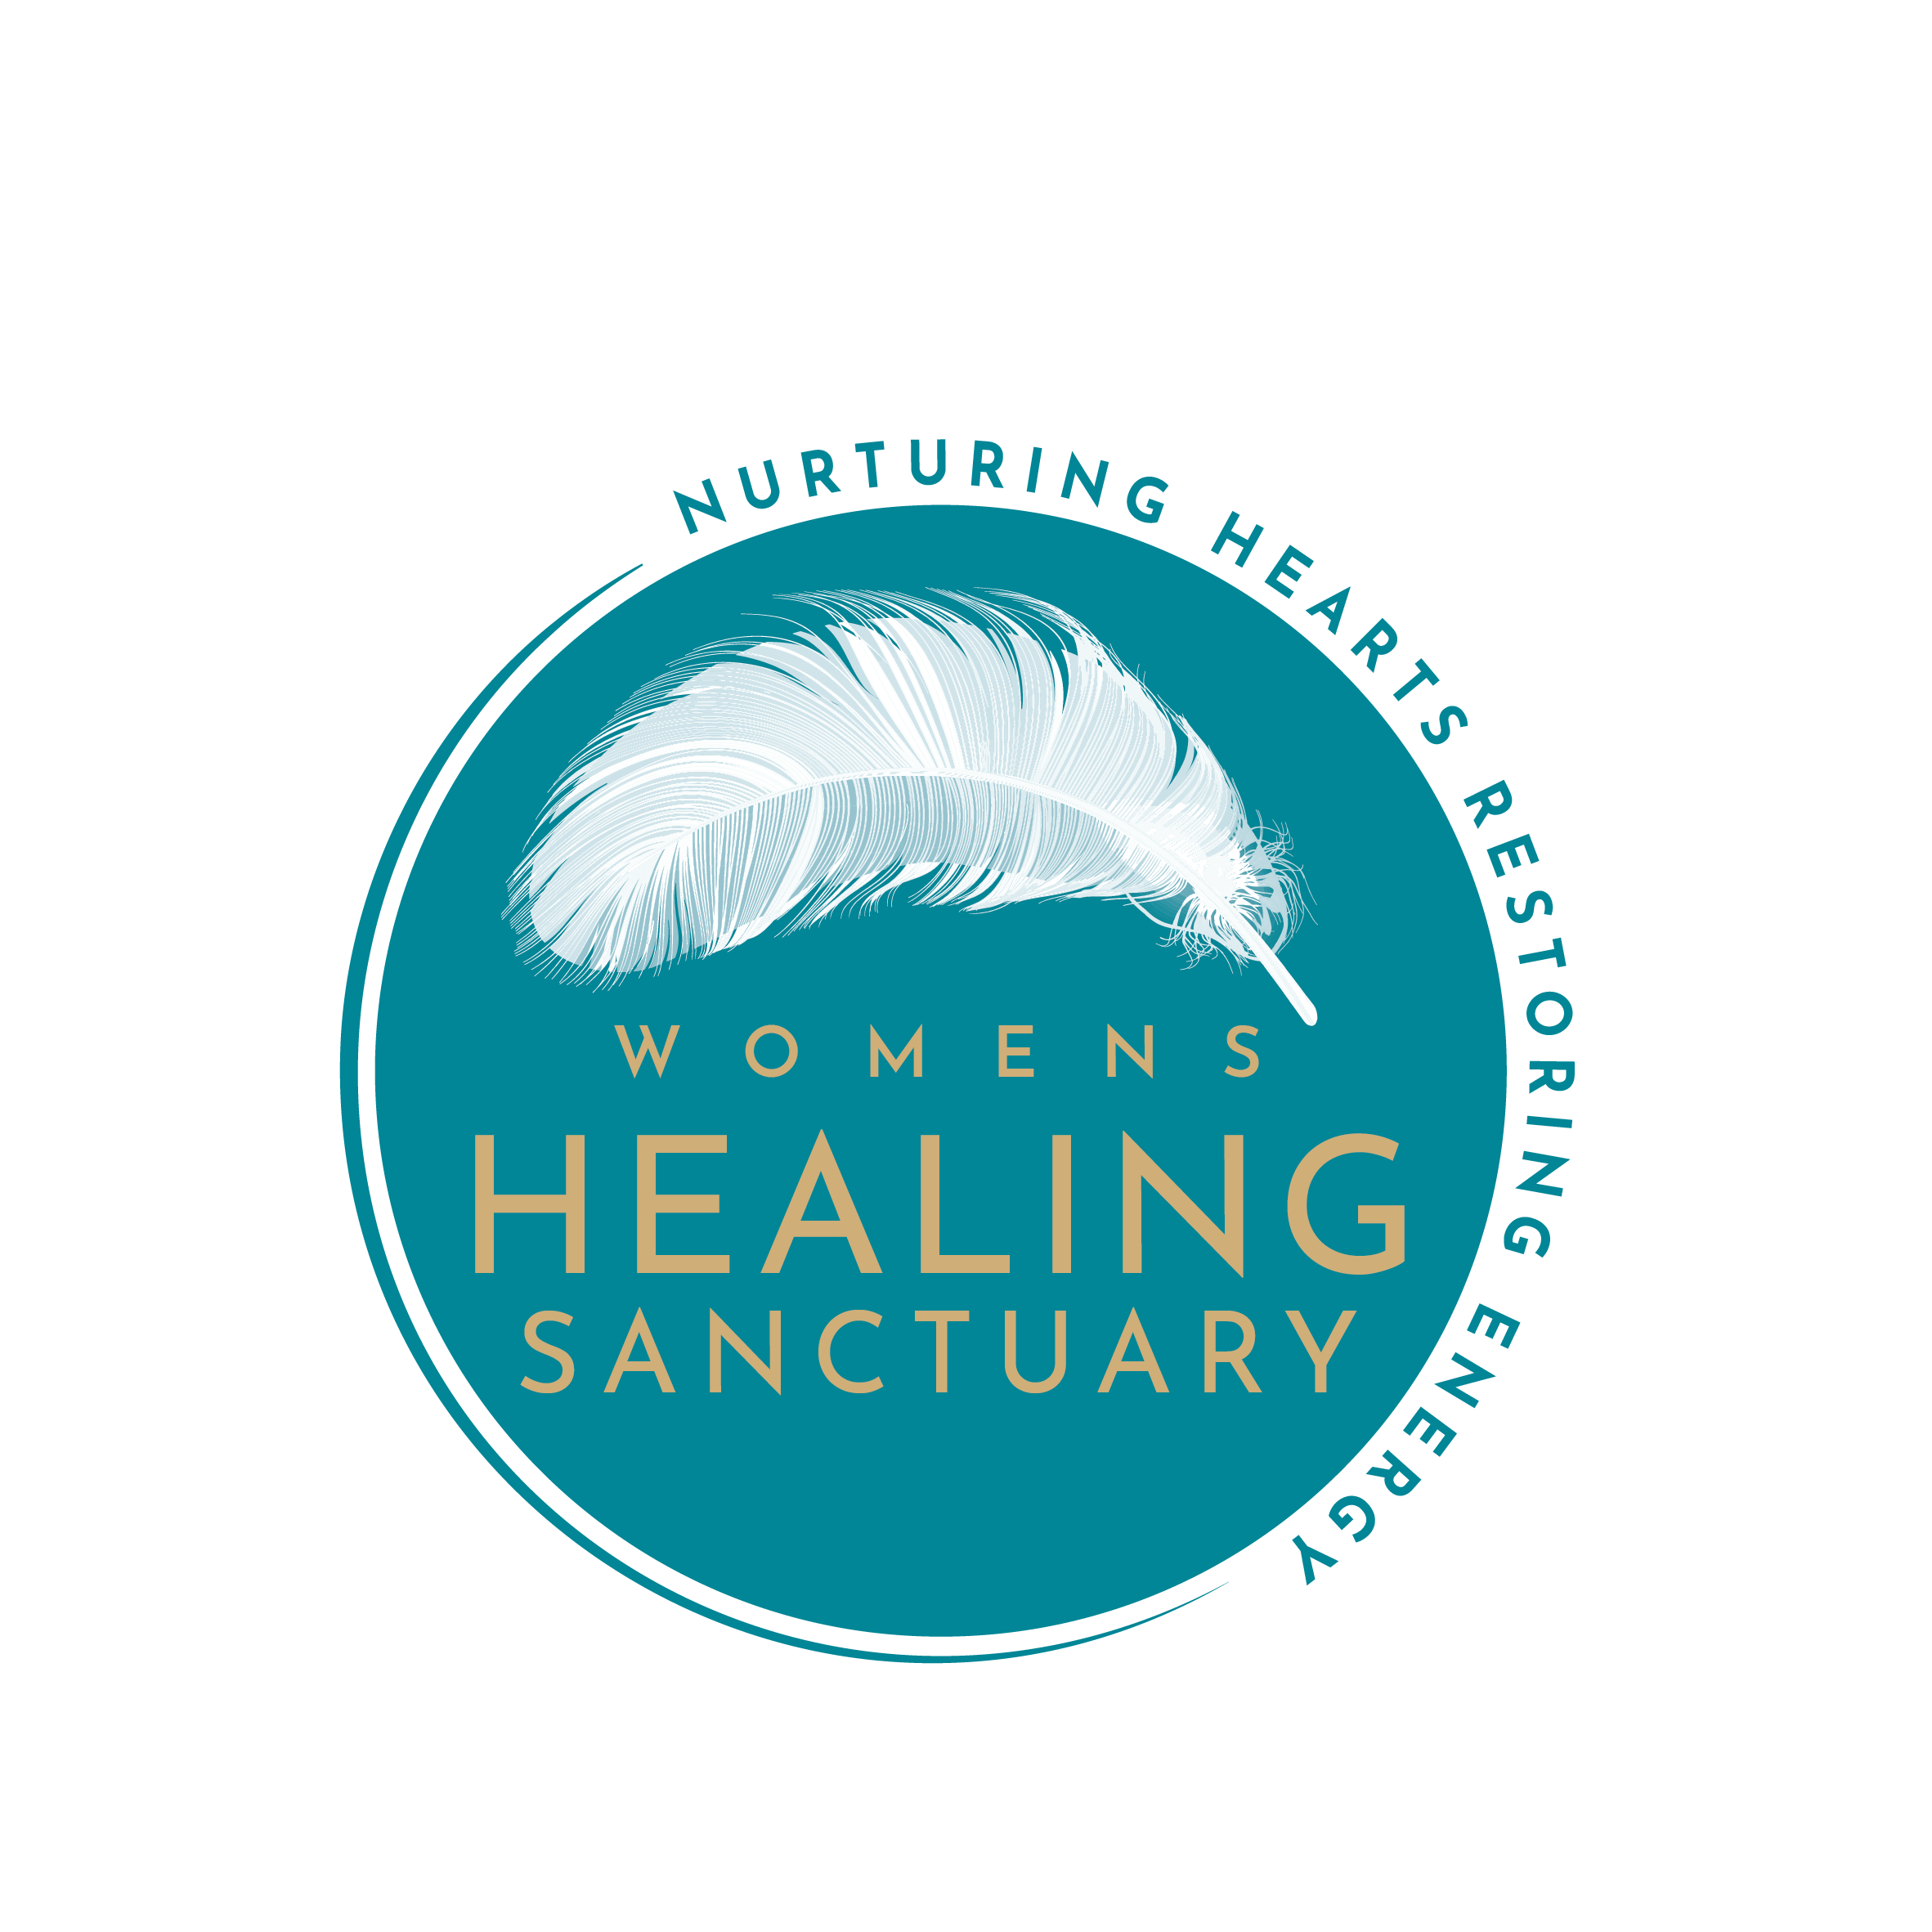 Womens Healing Sanctuary logo